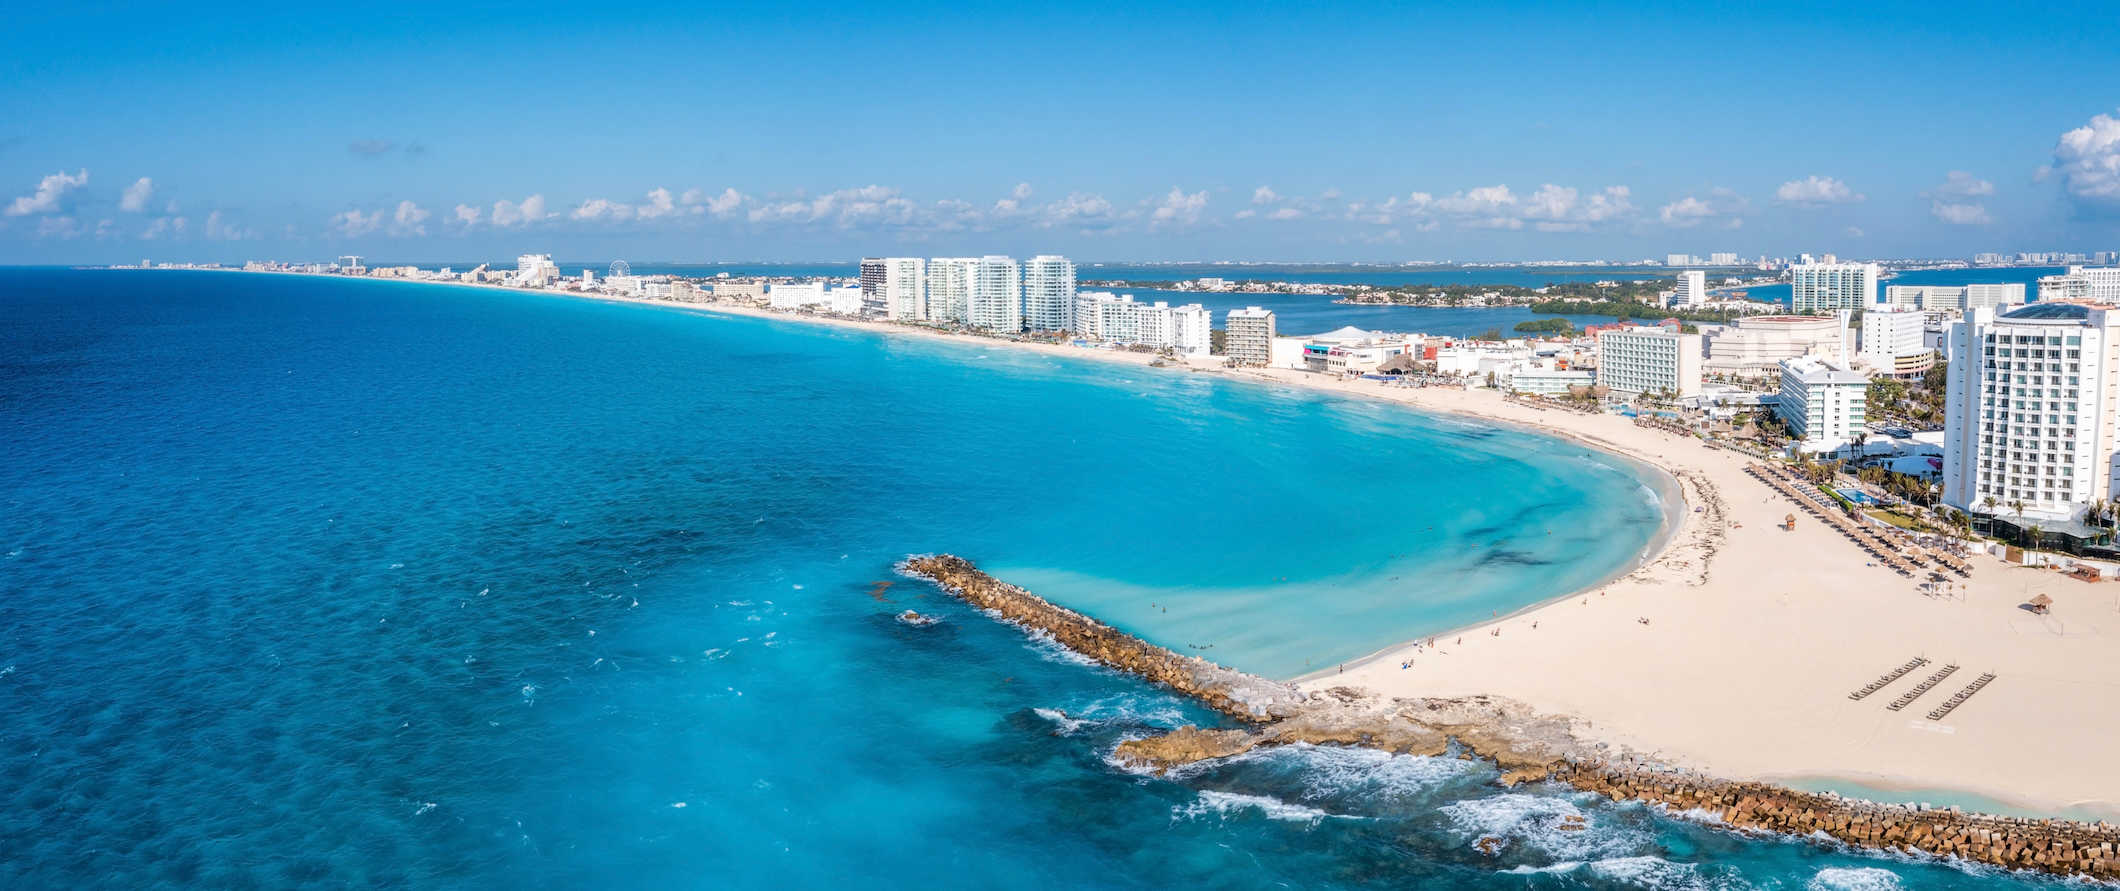 Litoral deslumbrante da ensolarada Cancún, no México, com resorts à beira-mar e barcos no oceano